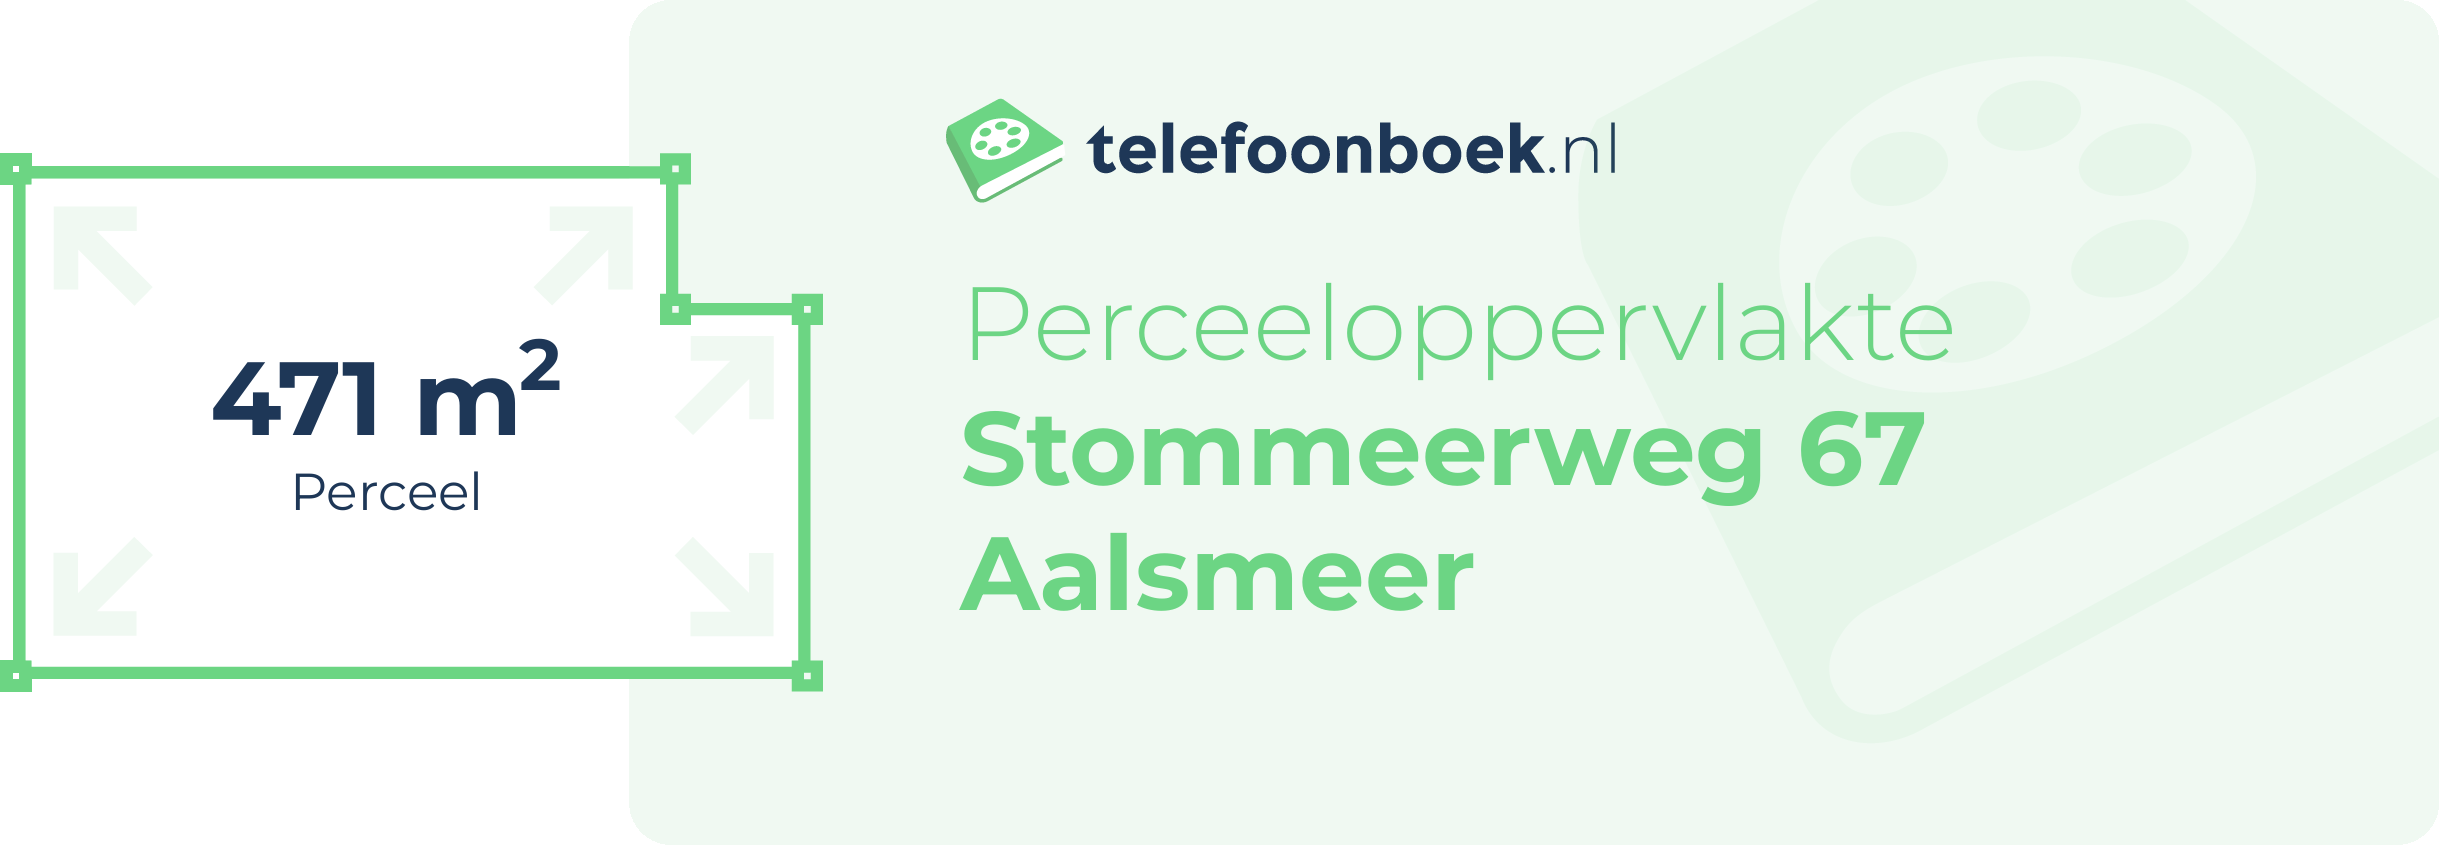 Perceeloppervlakte Stommeerweg 67 Aalsmeer